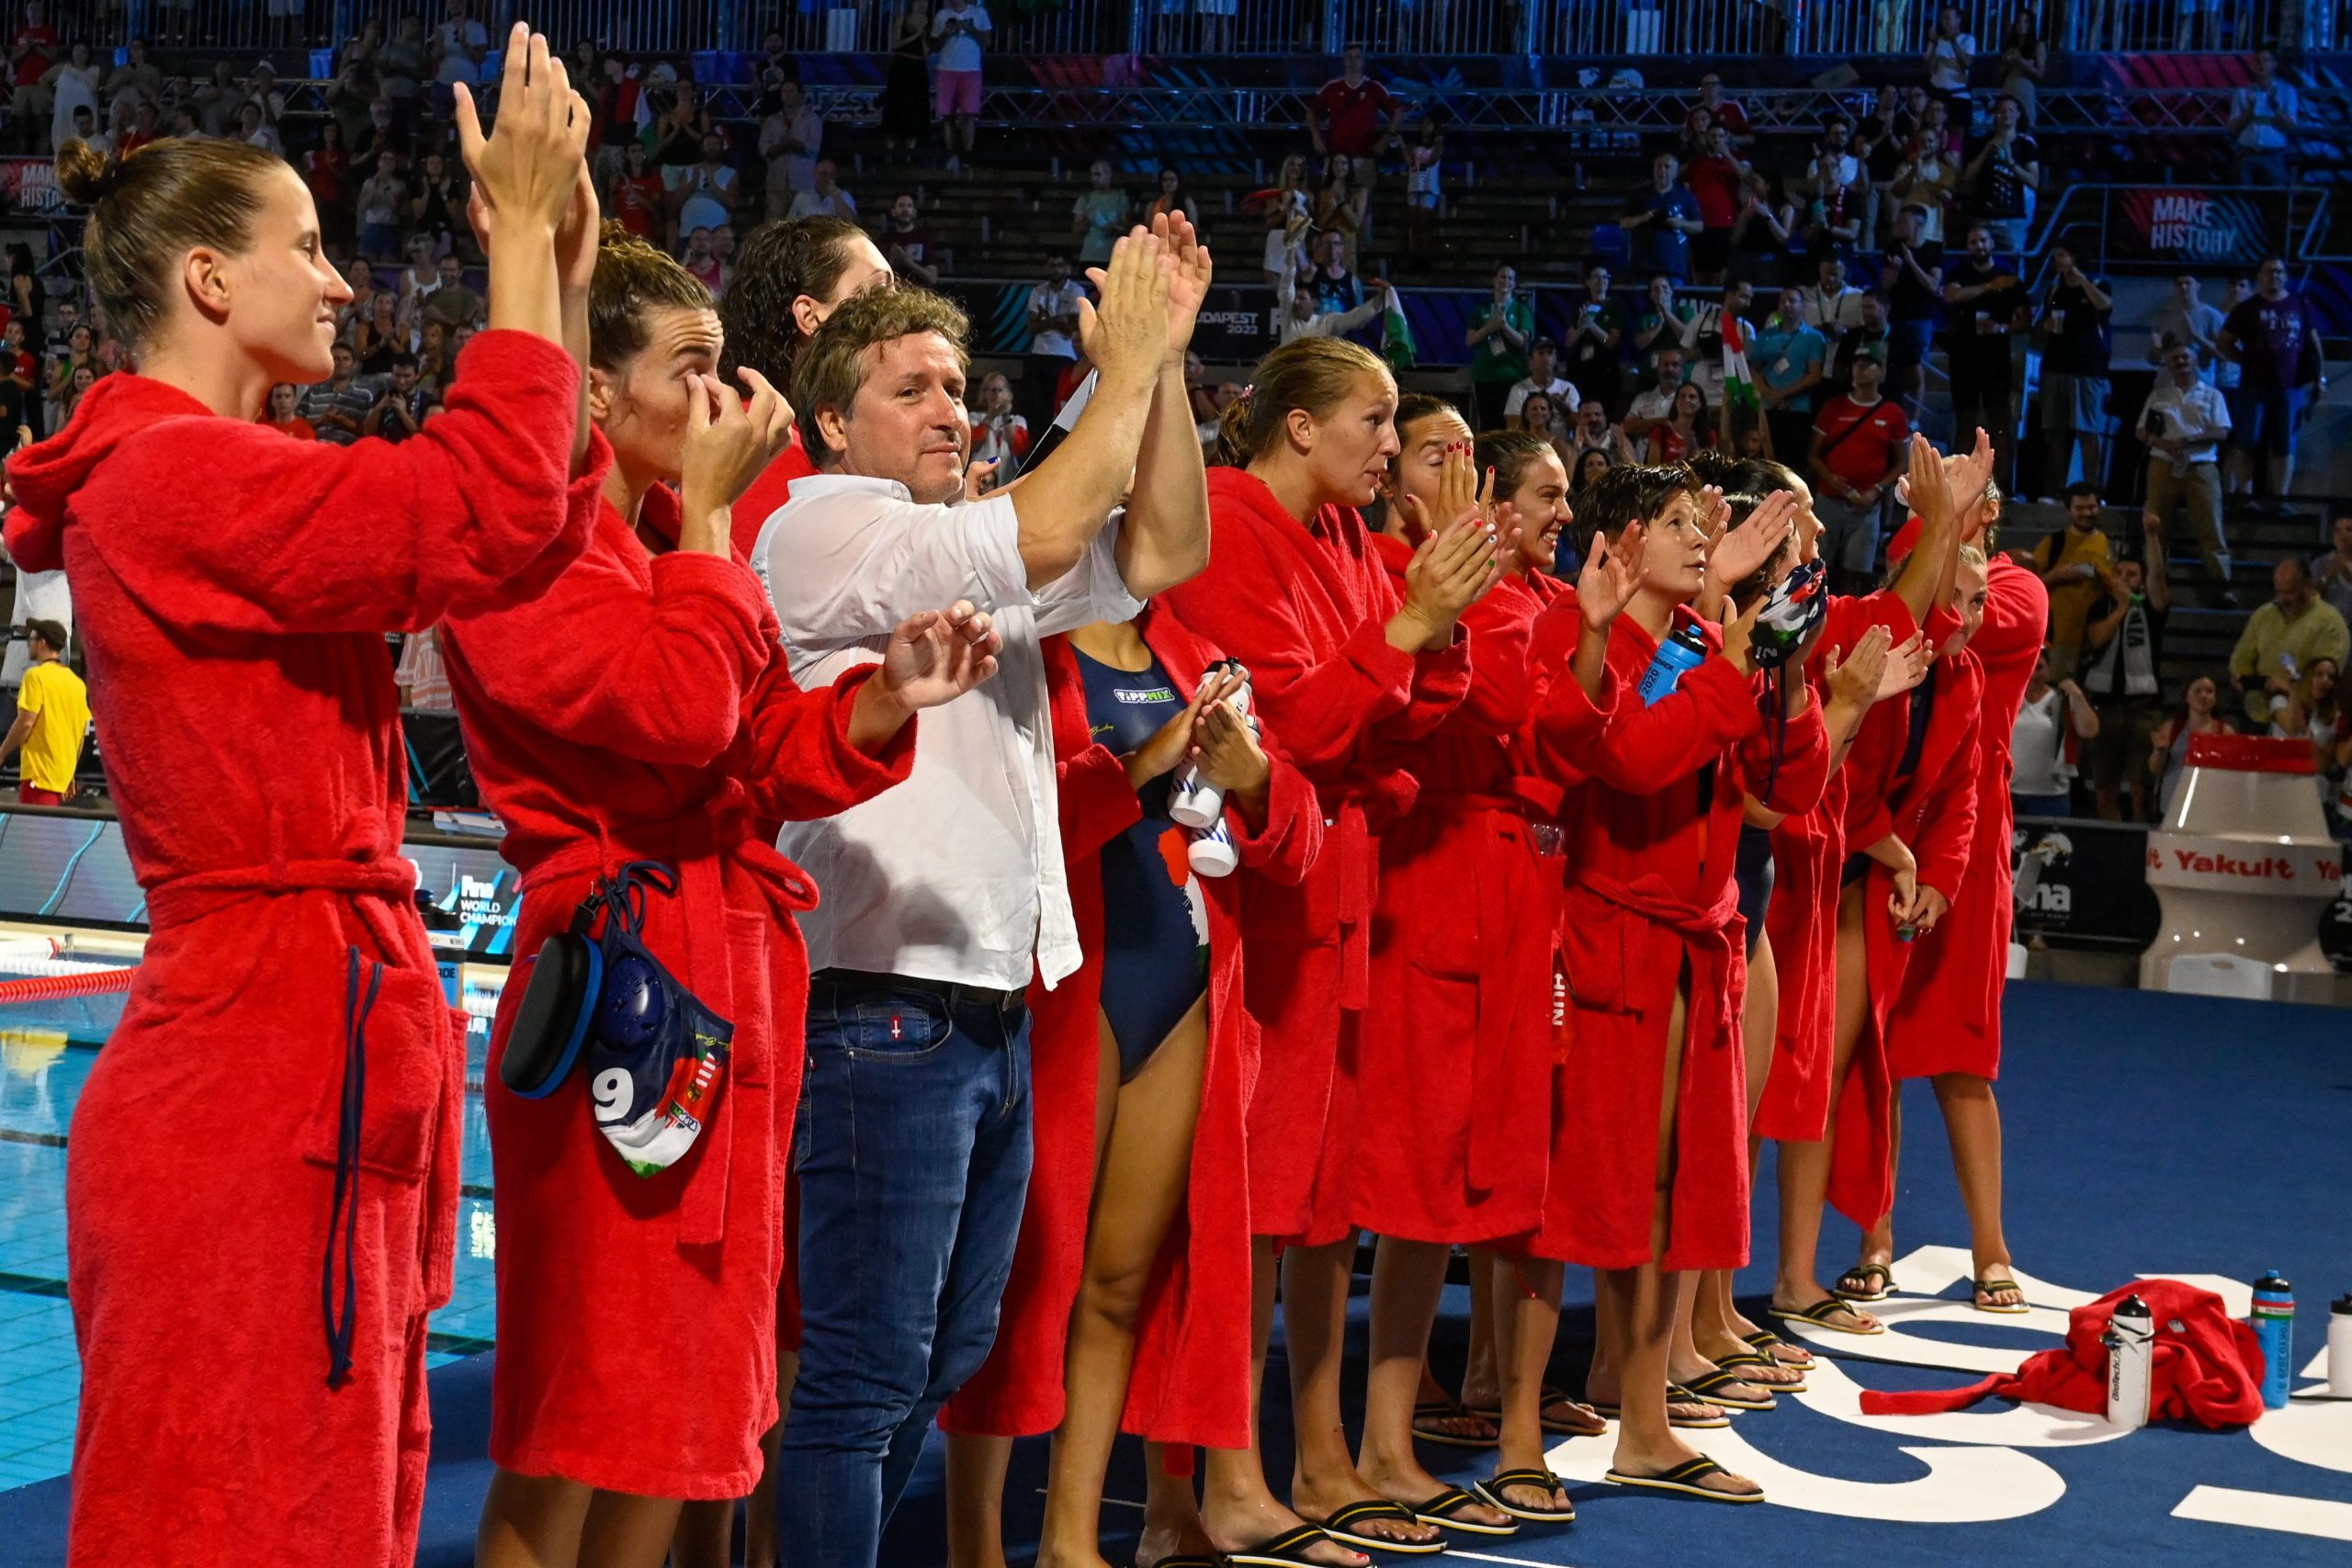 Schwimm-WM: Ungarische Wasserballerinnen erreichen Halbfinale